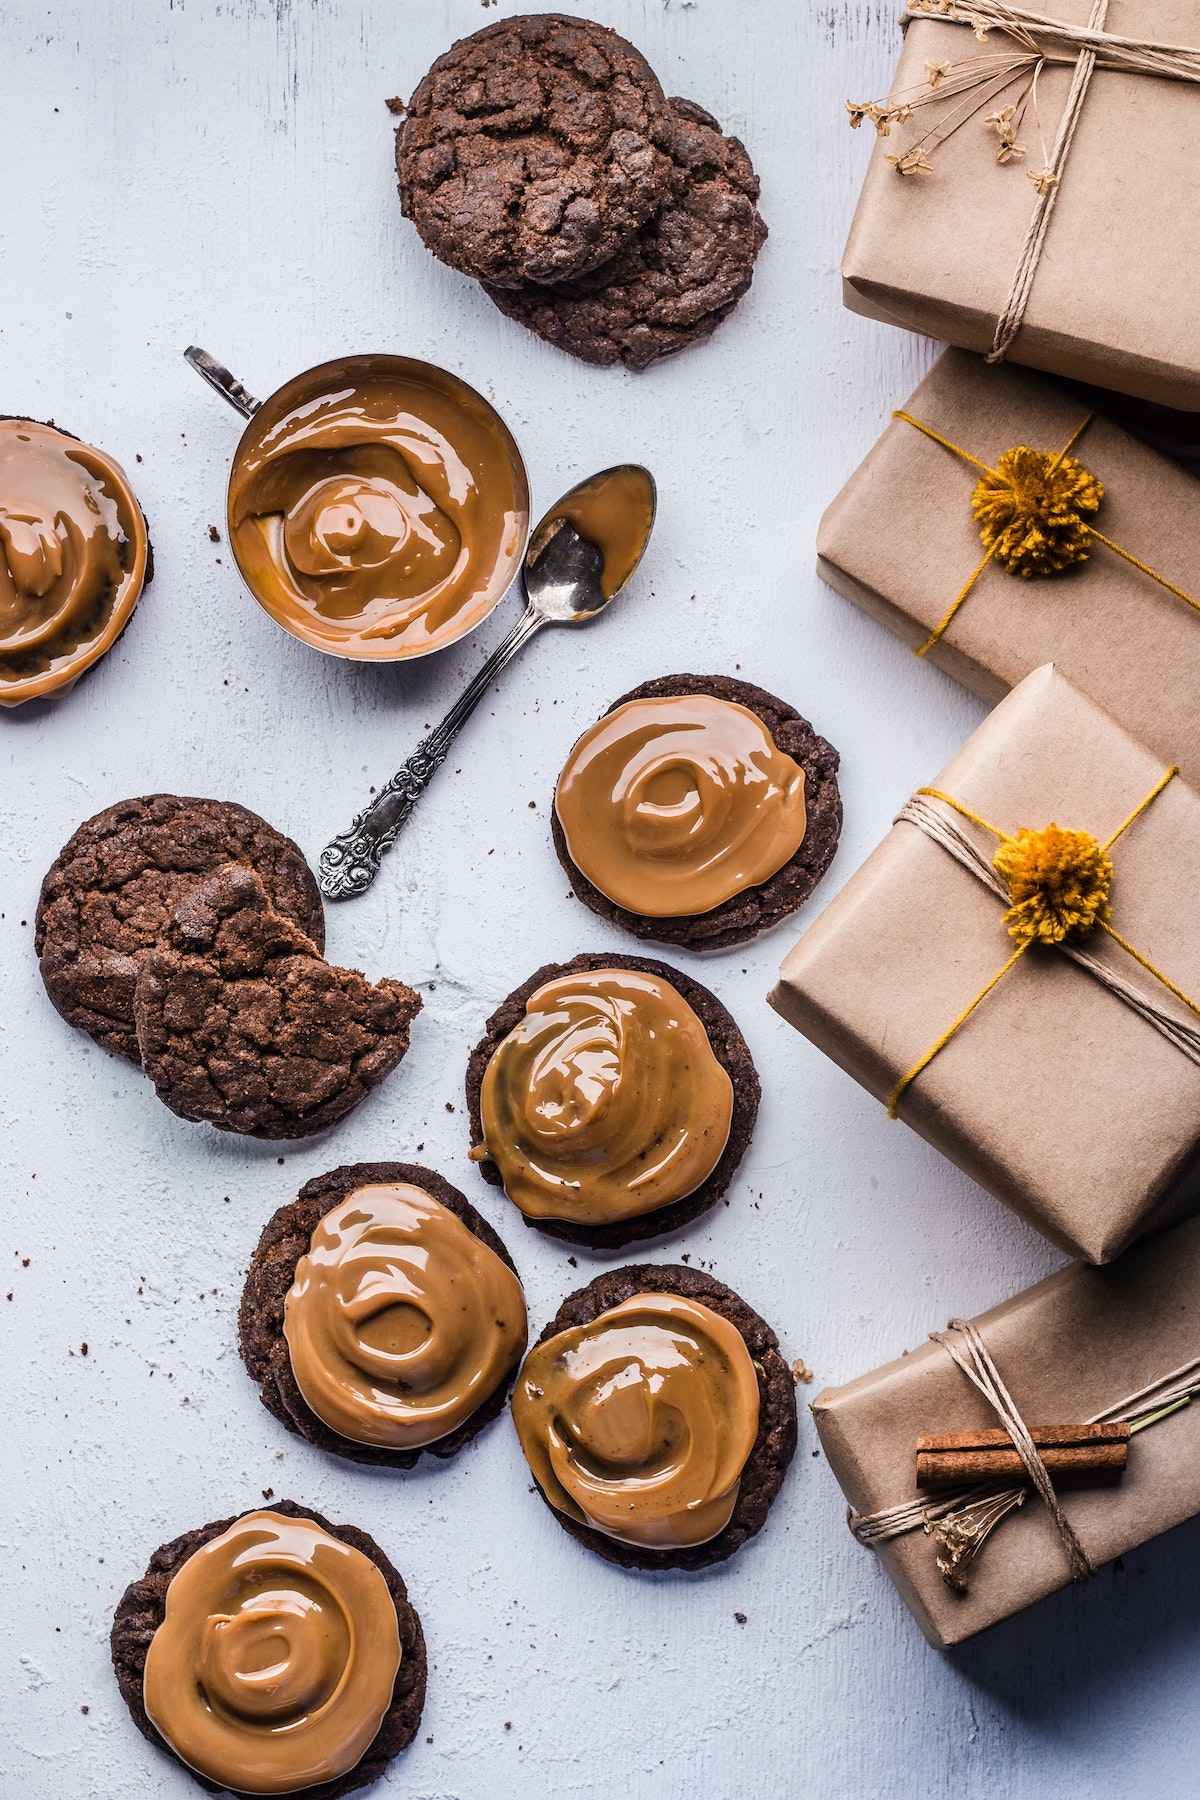 idée biscuit Noël original chocolat caramel